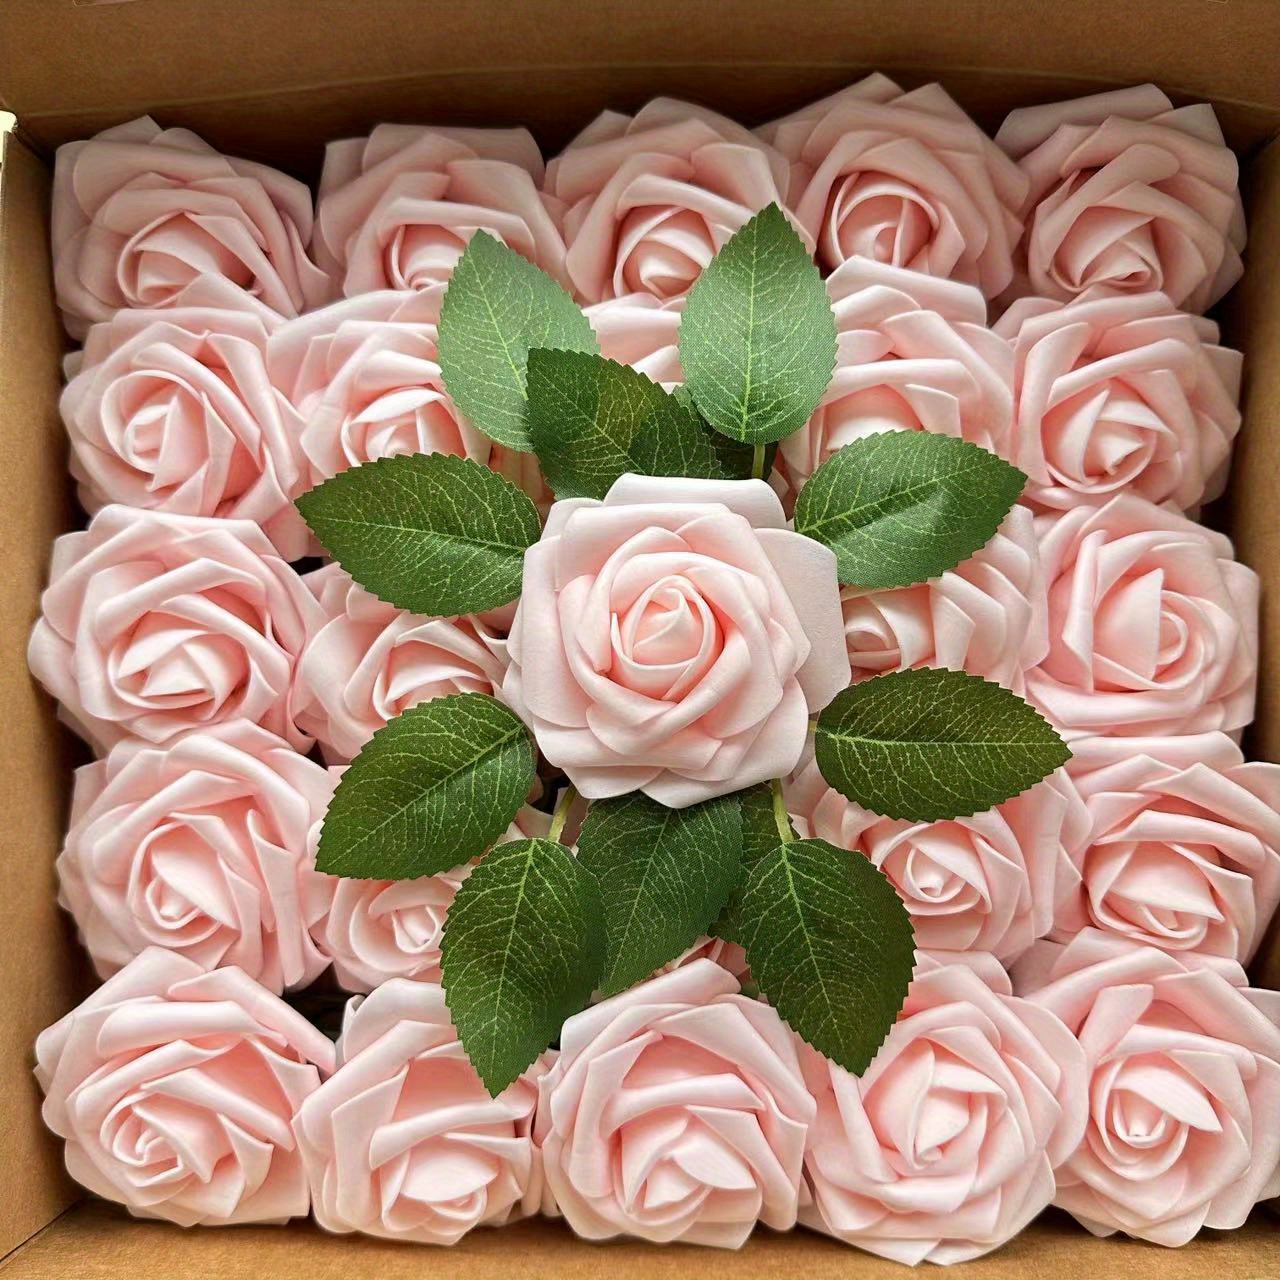 25 Pezzi Di Fiori Artificiali Rosa, Rose Finte Dall'aspetto Reale